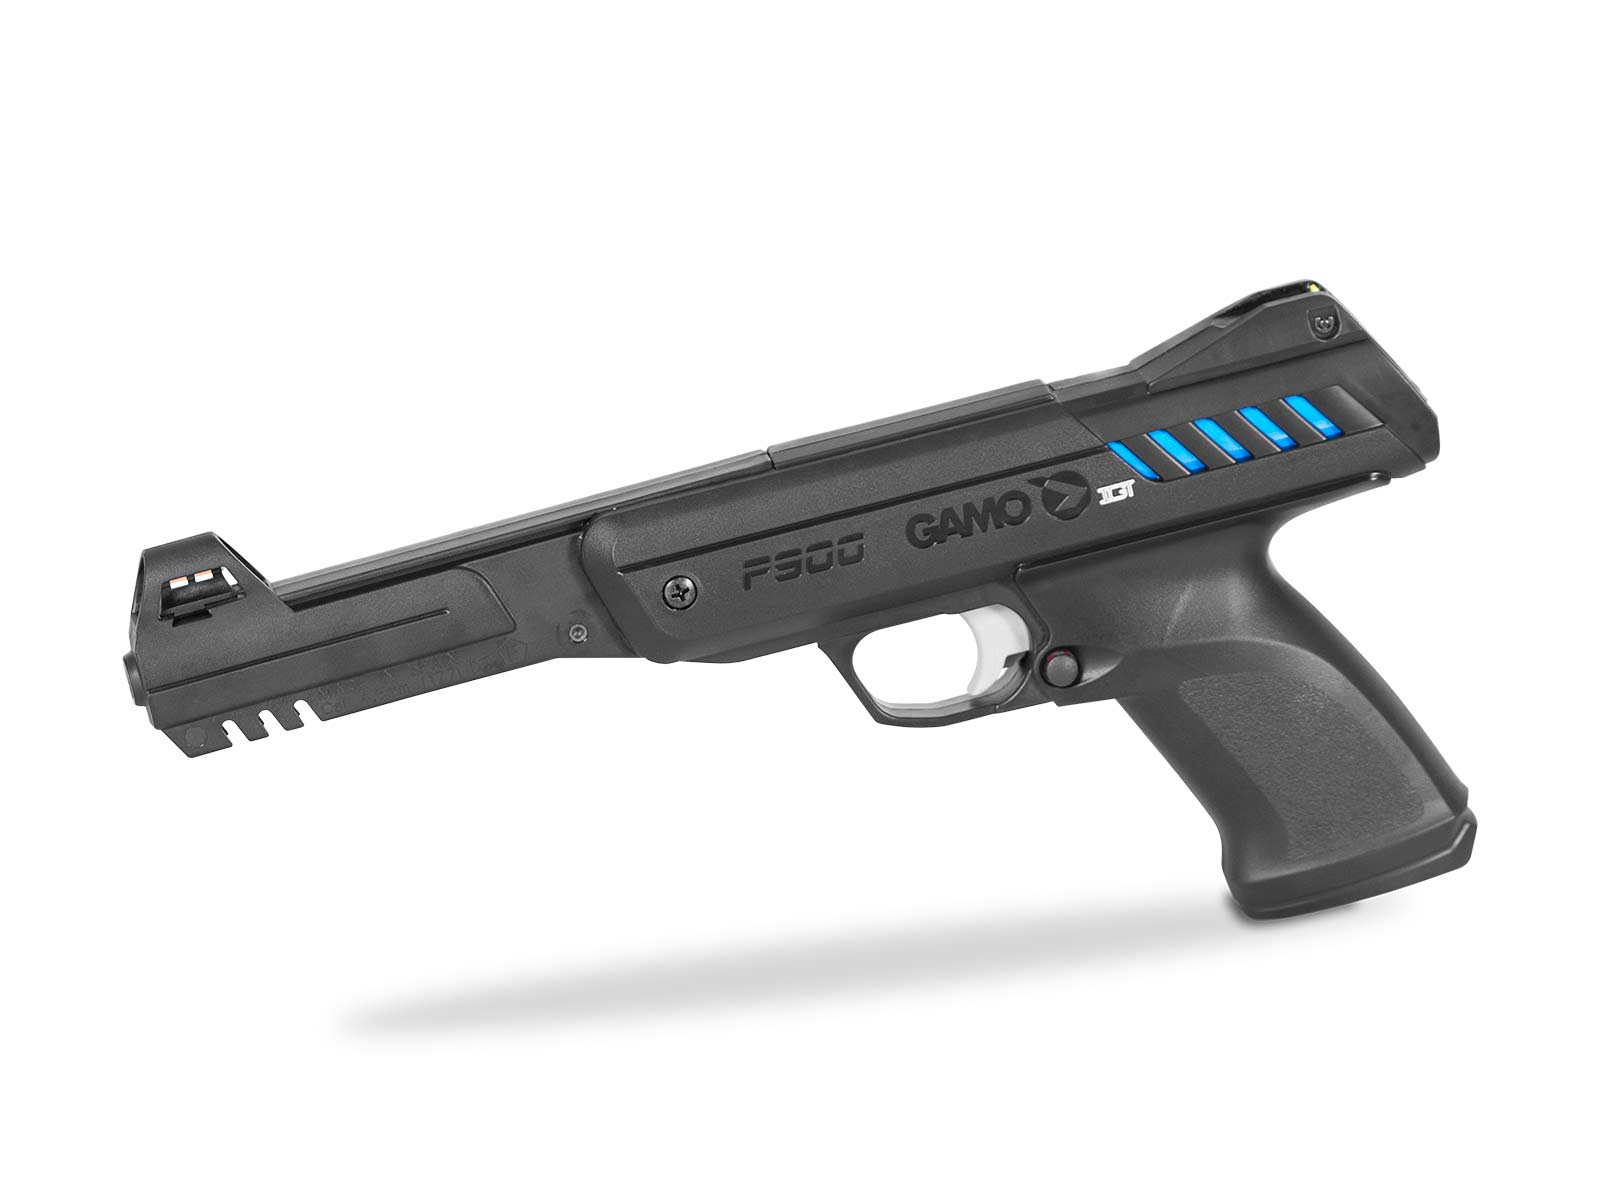 Pack pistolet à plombs Gamo P900 IGT 4,5mm - 3 joules - Tir au plomb